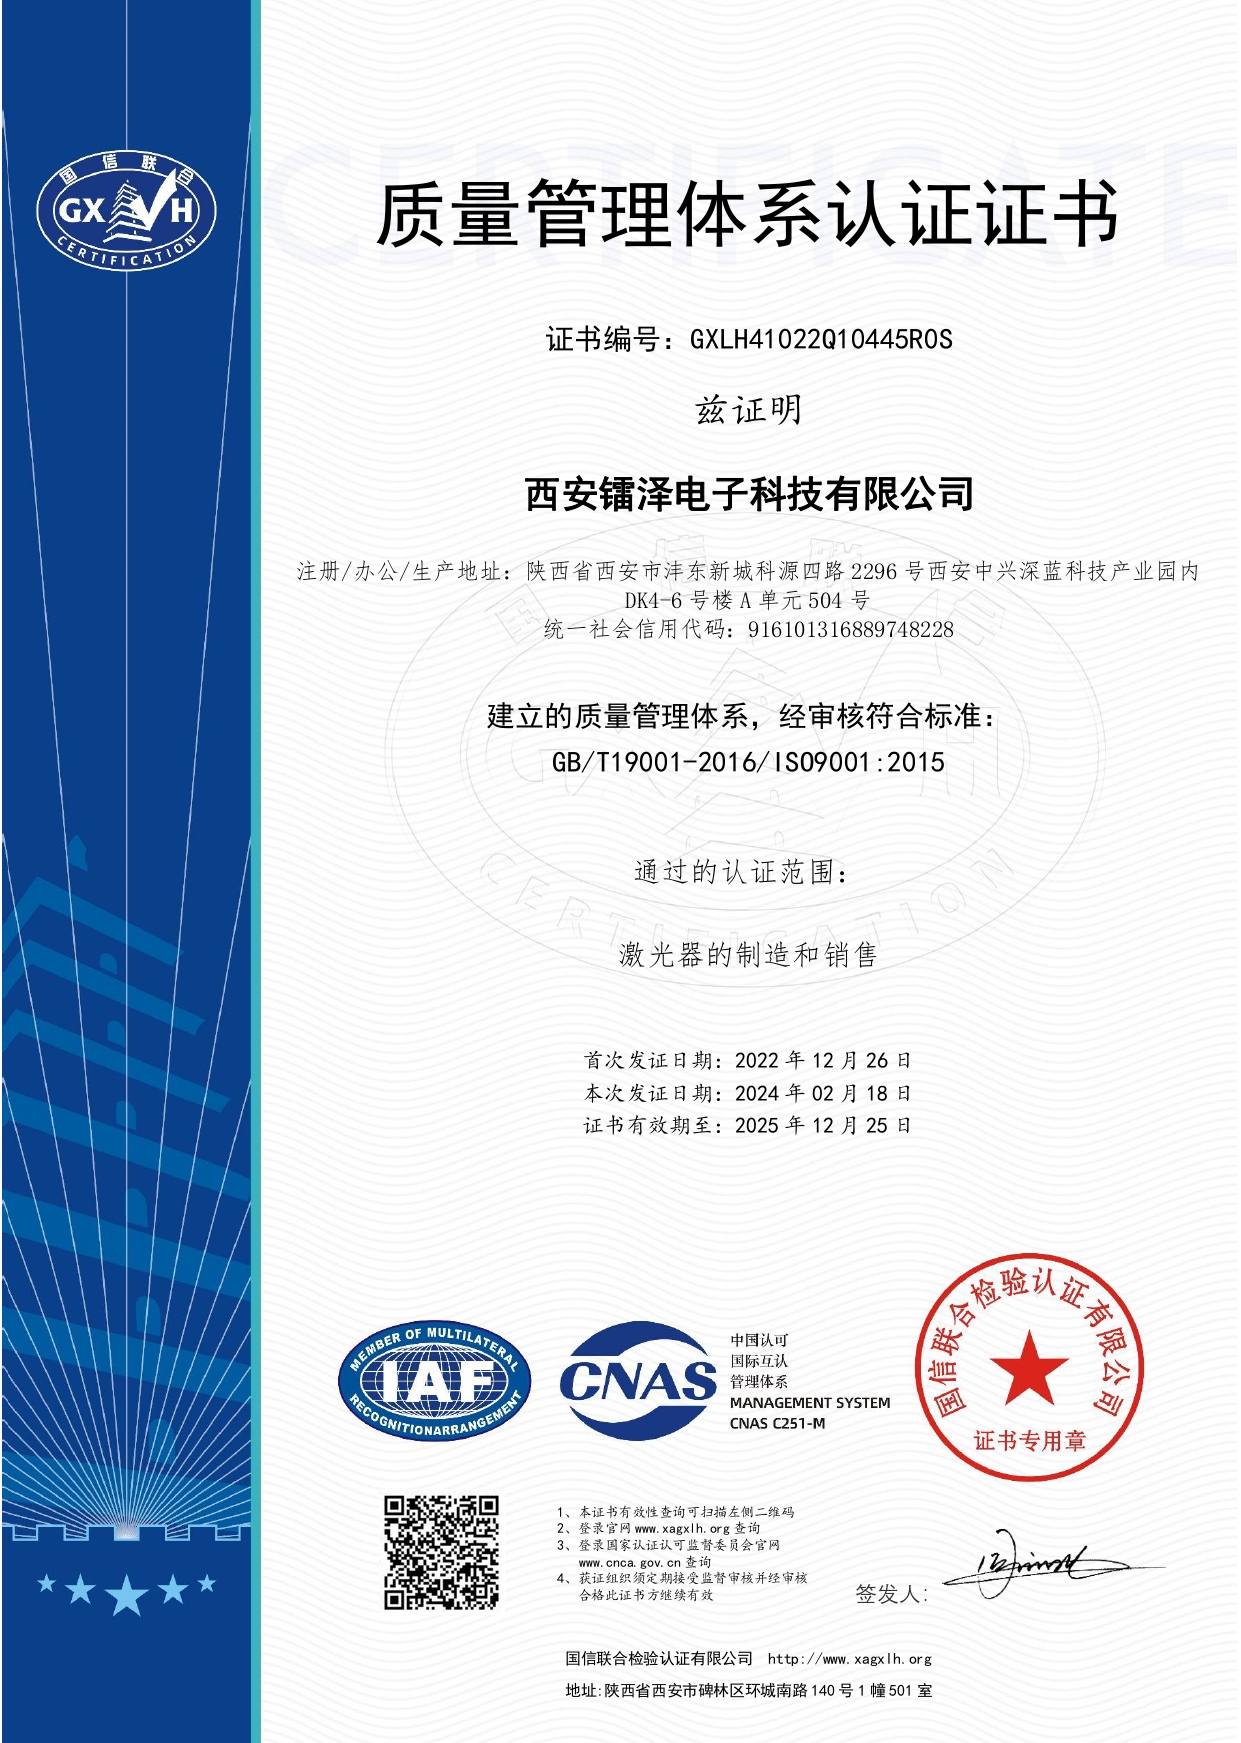 热烈祝贺公司顺利通过ISO9001:2015质量管理体系认证